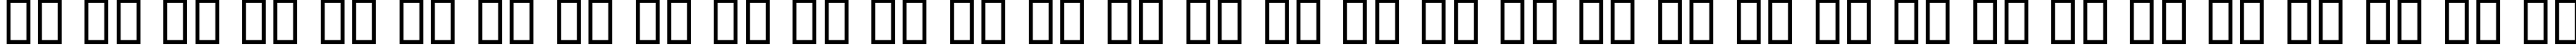 Пример написания русского алфавита шрифтом KacstArt